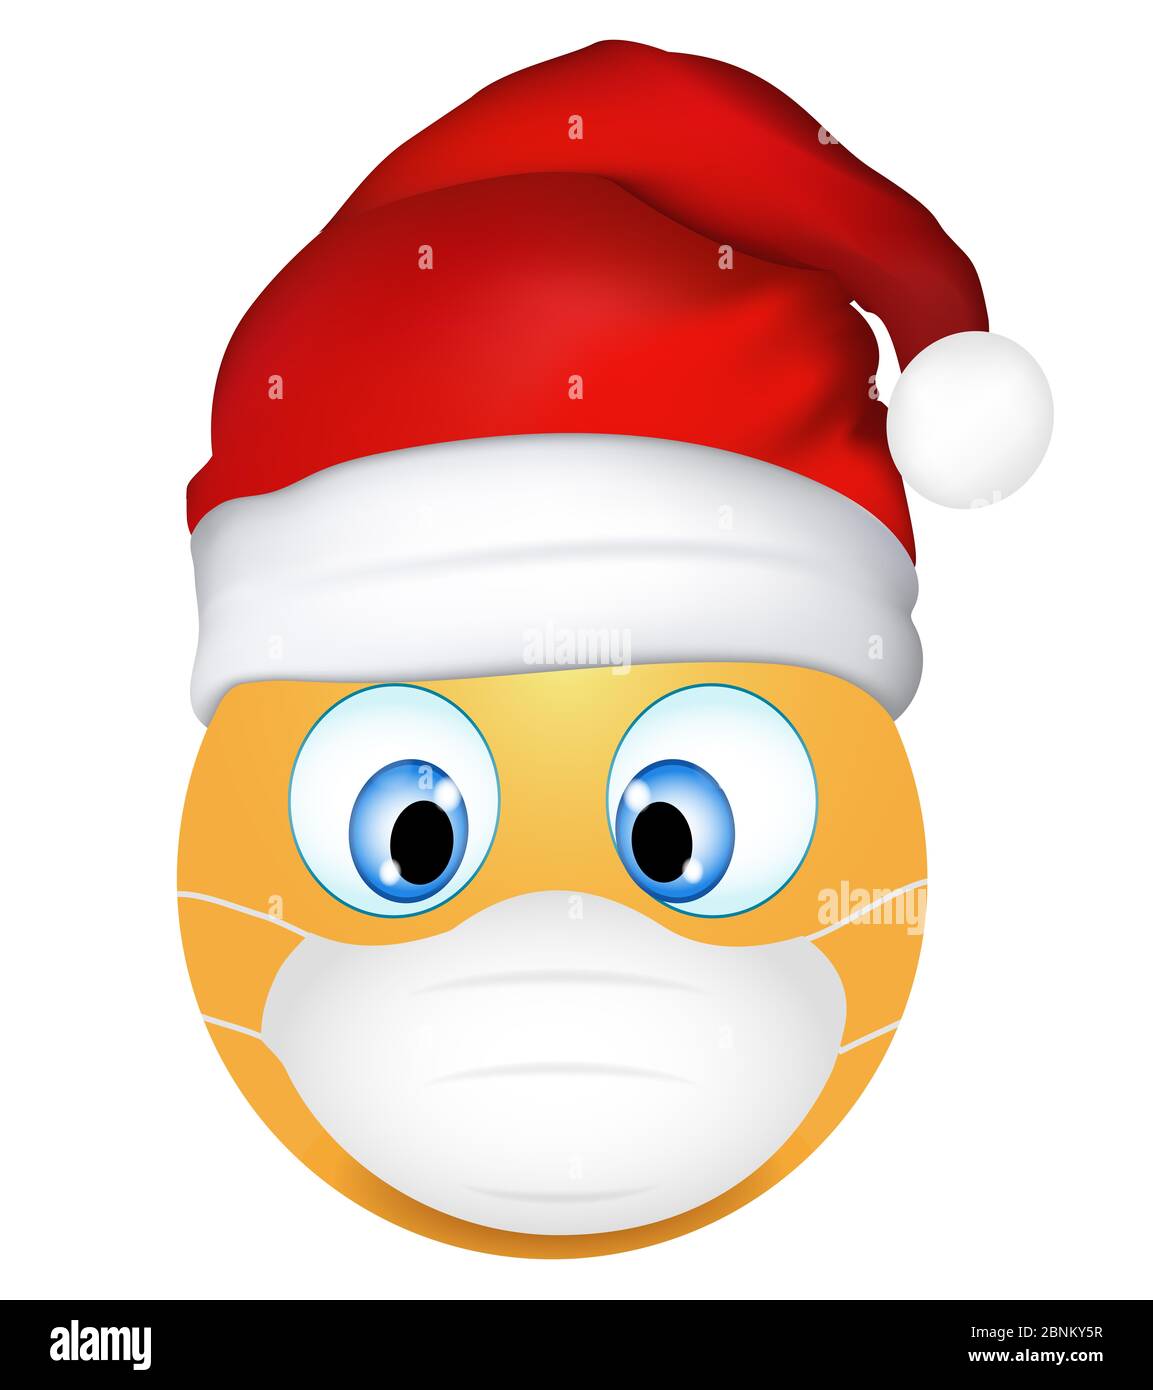 Buon Natale Emoticon.Emoticon Santa Claus Immagini E Fotos Stock Alamy